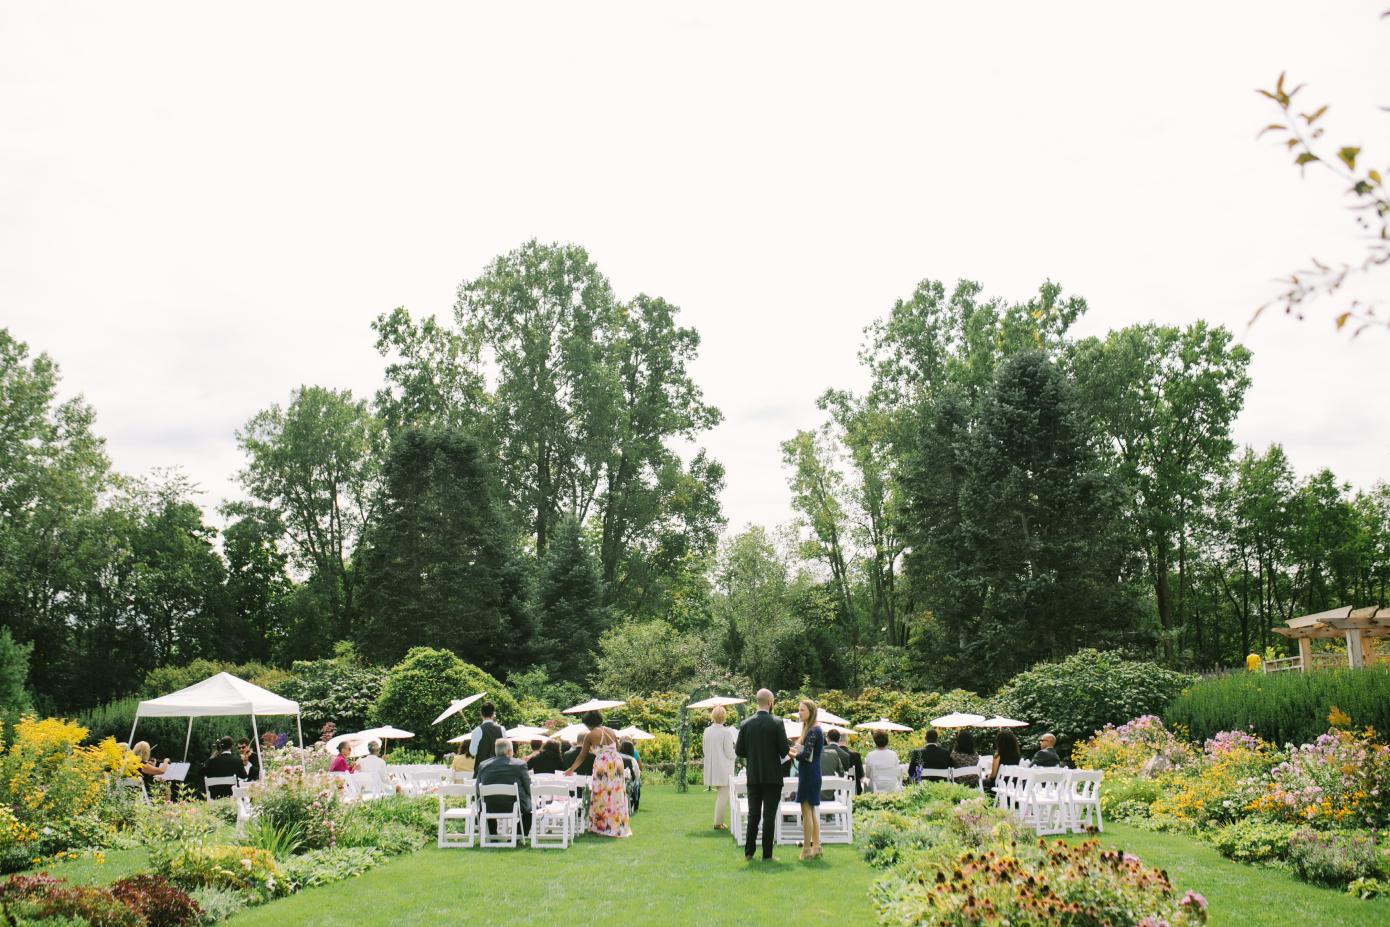 A wedding ceremony at the perennial garden